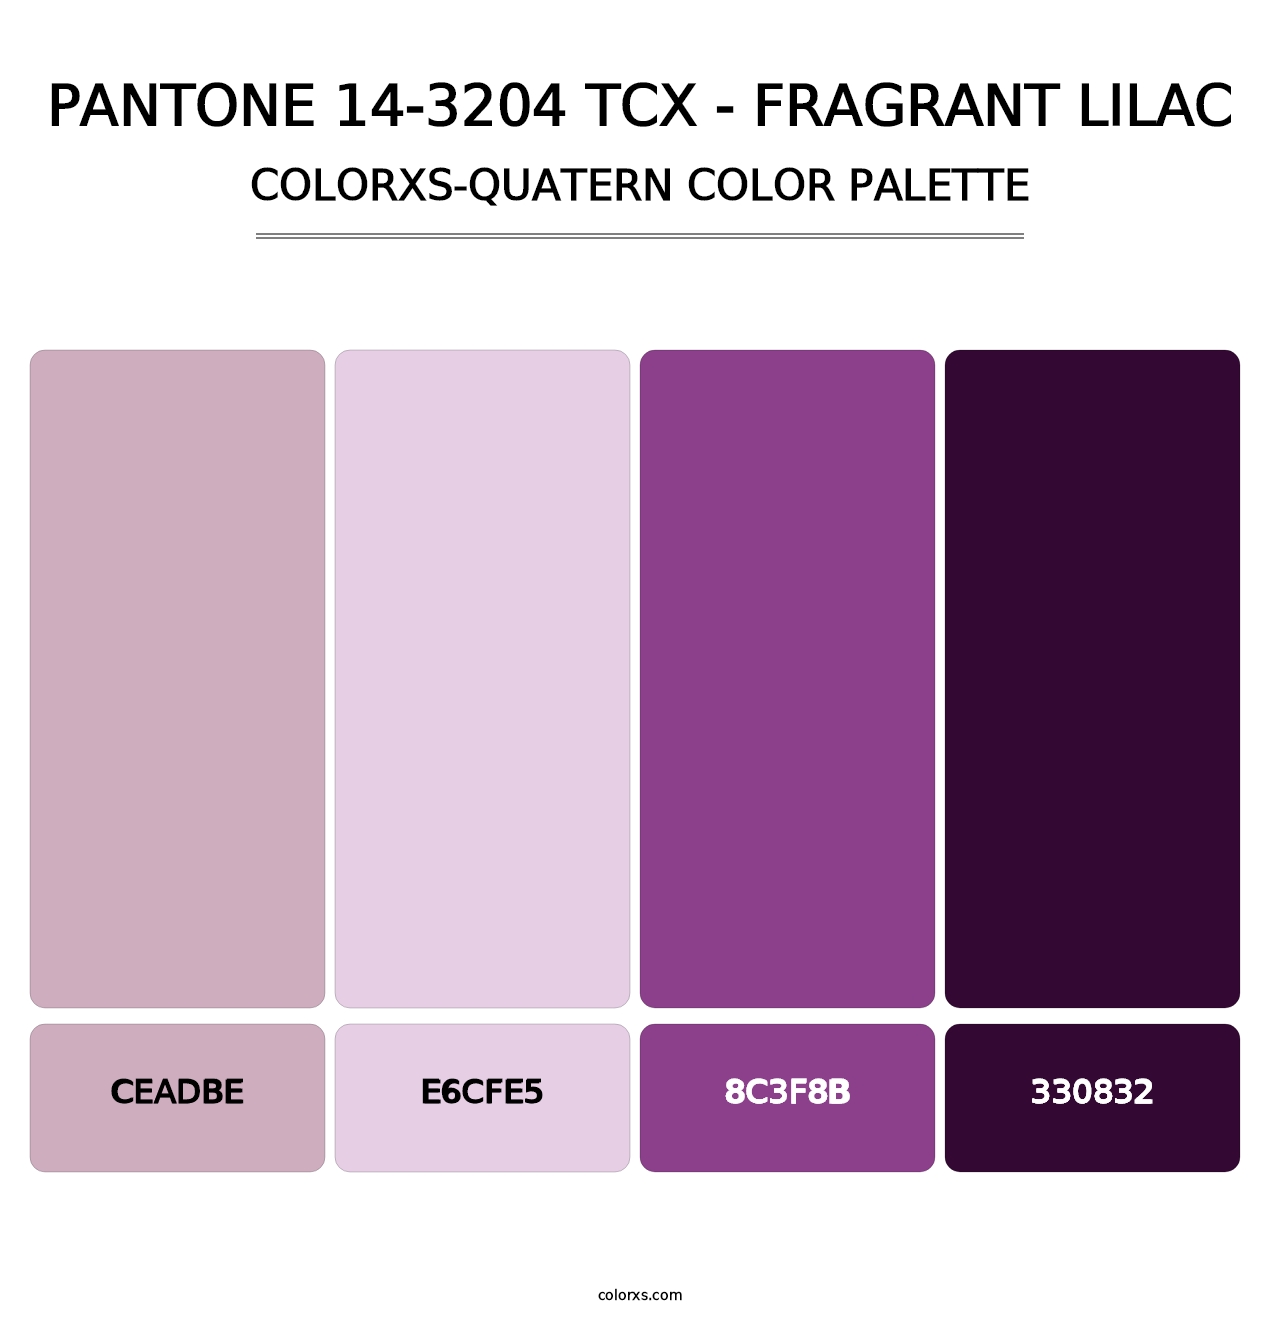 PANTONE 14-3204 TCX - Fragrant Lilac - Colorxs Quatern Palette